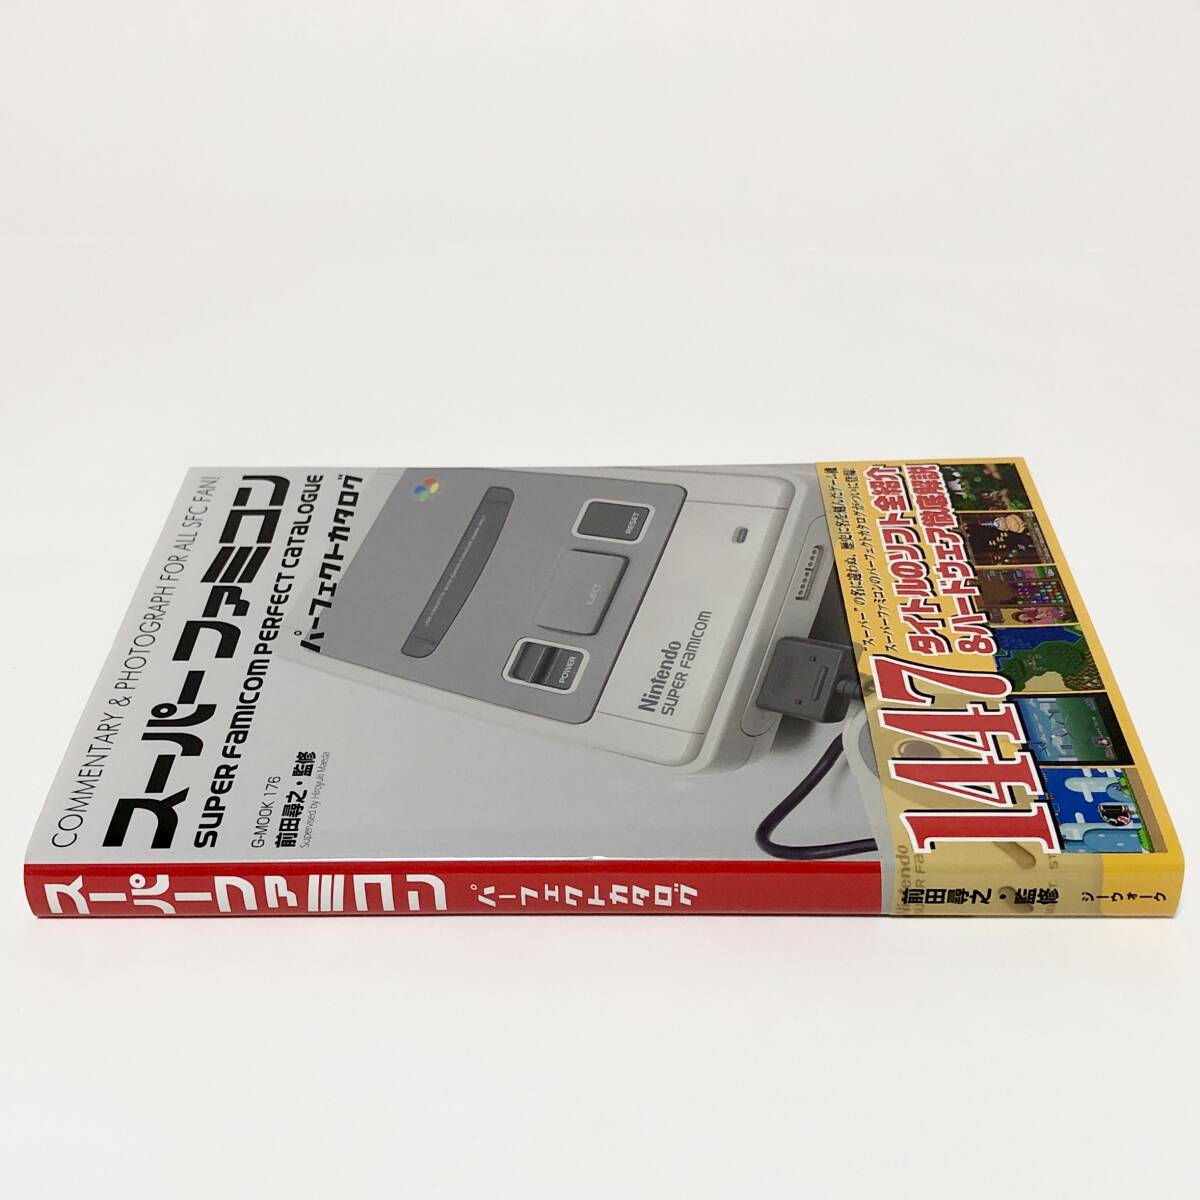 中古本 初版 帯付き スーパーファミコン パーフェクトカタログ / Nintendo Super Famicom Perfect Catalogue Book _画像3